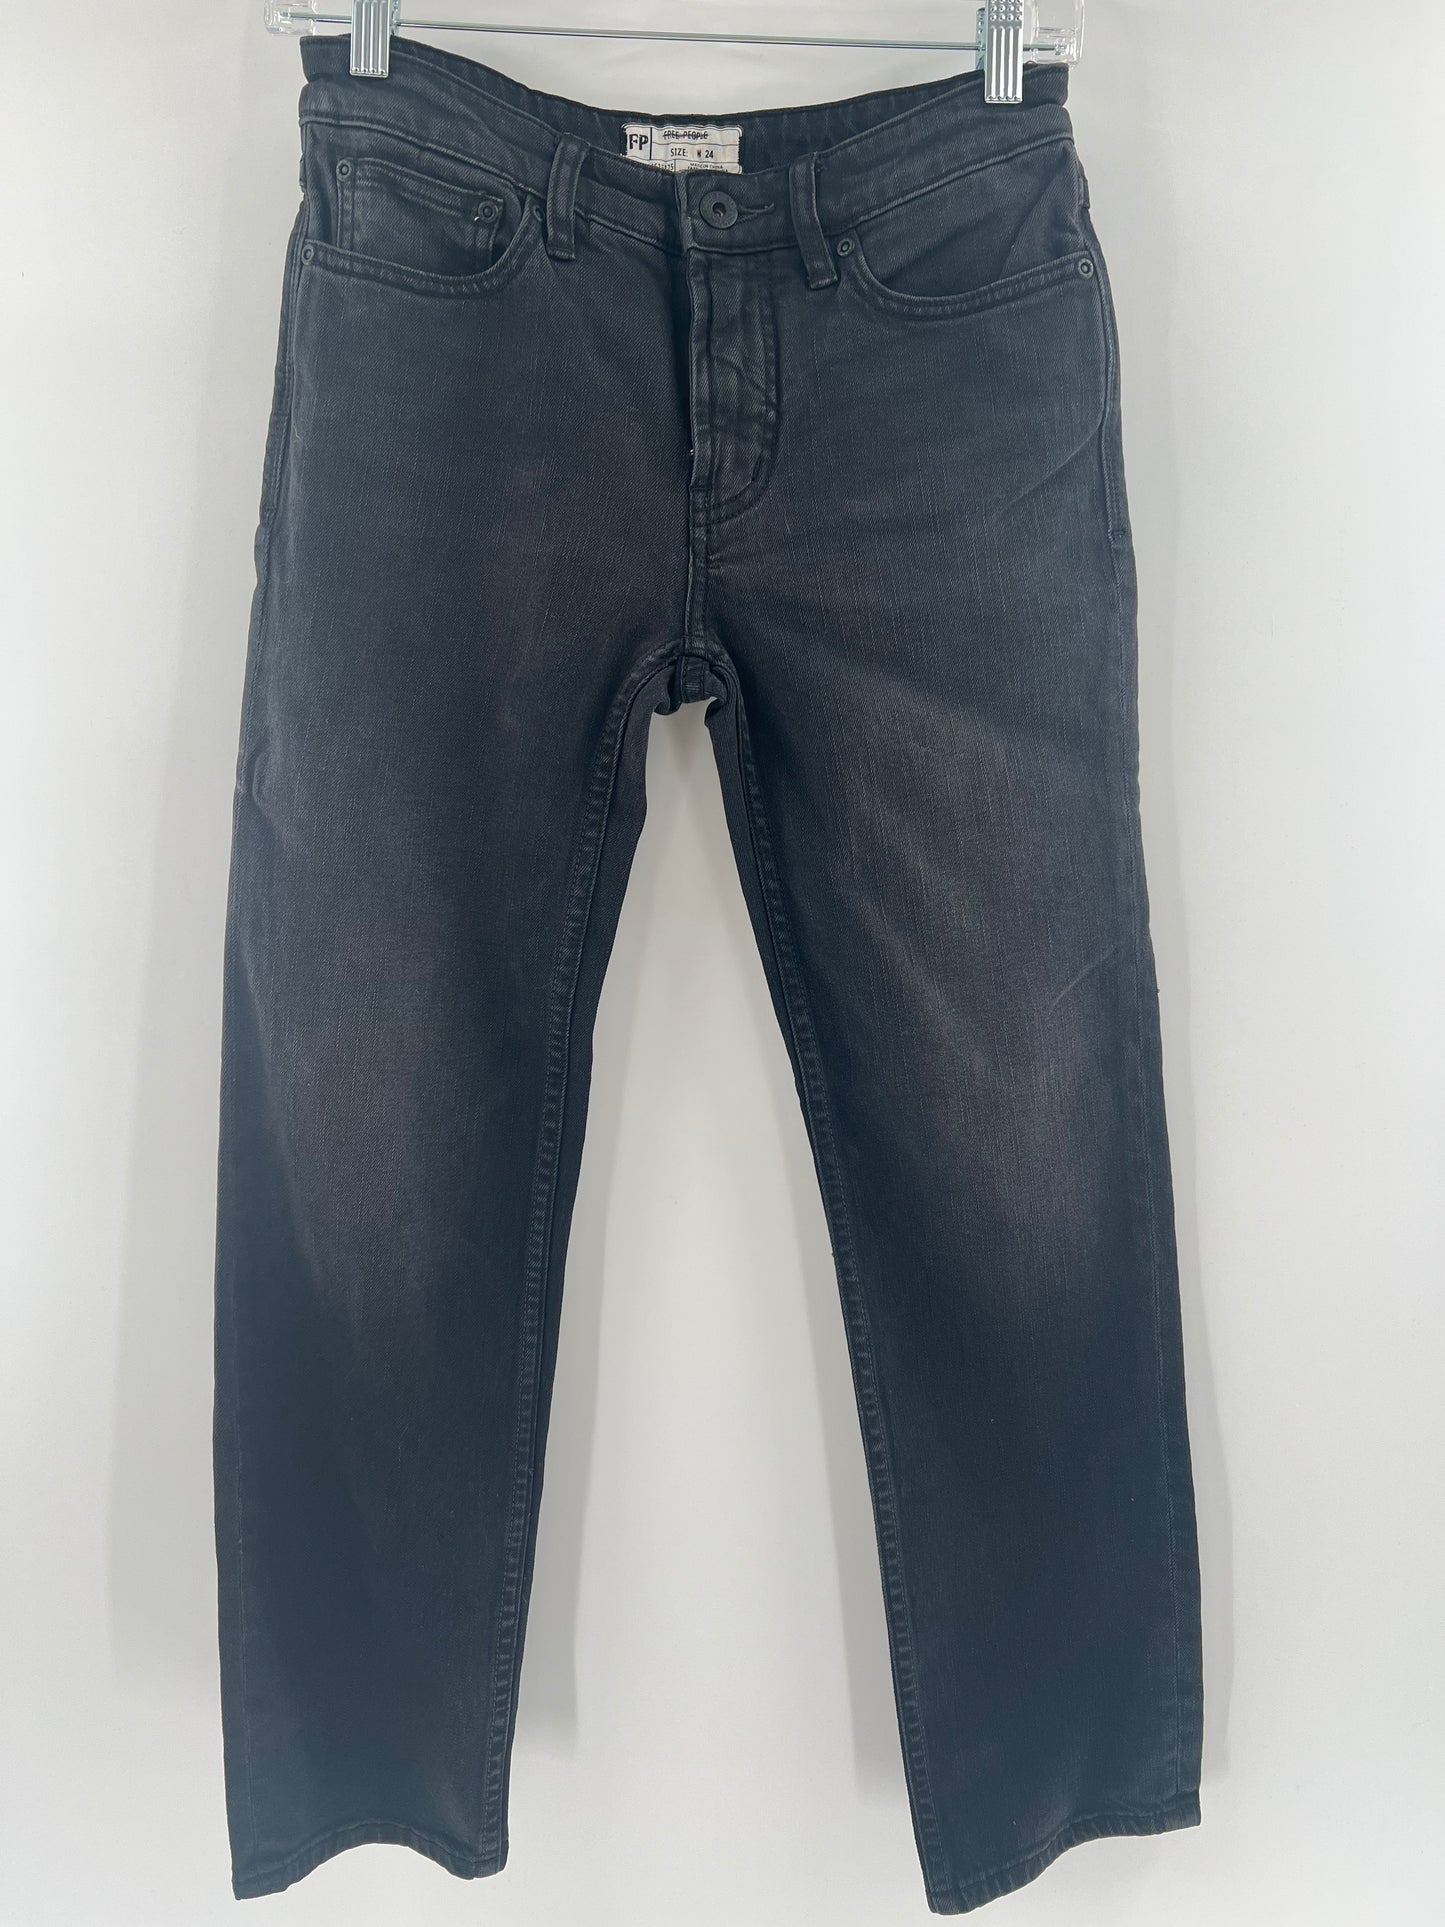 Free People Black Jeans (size W 24)